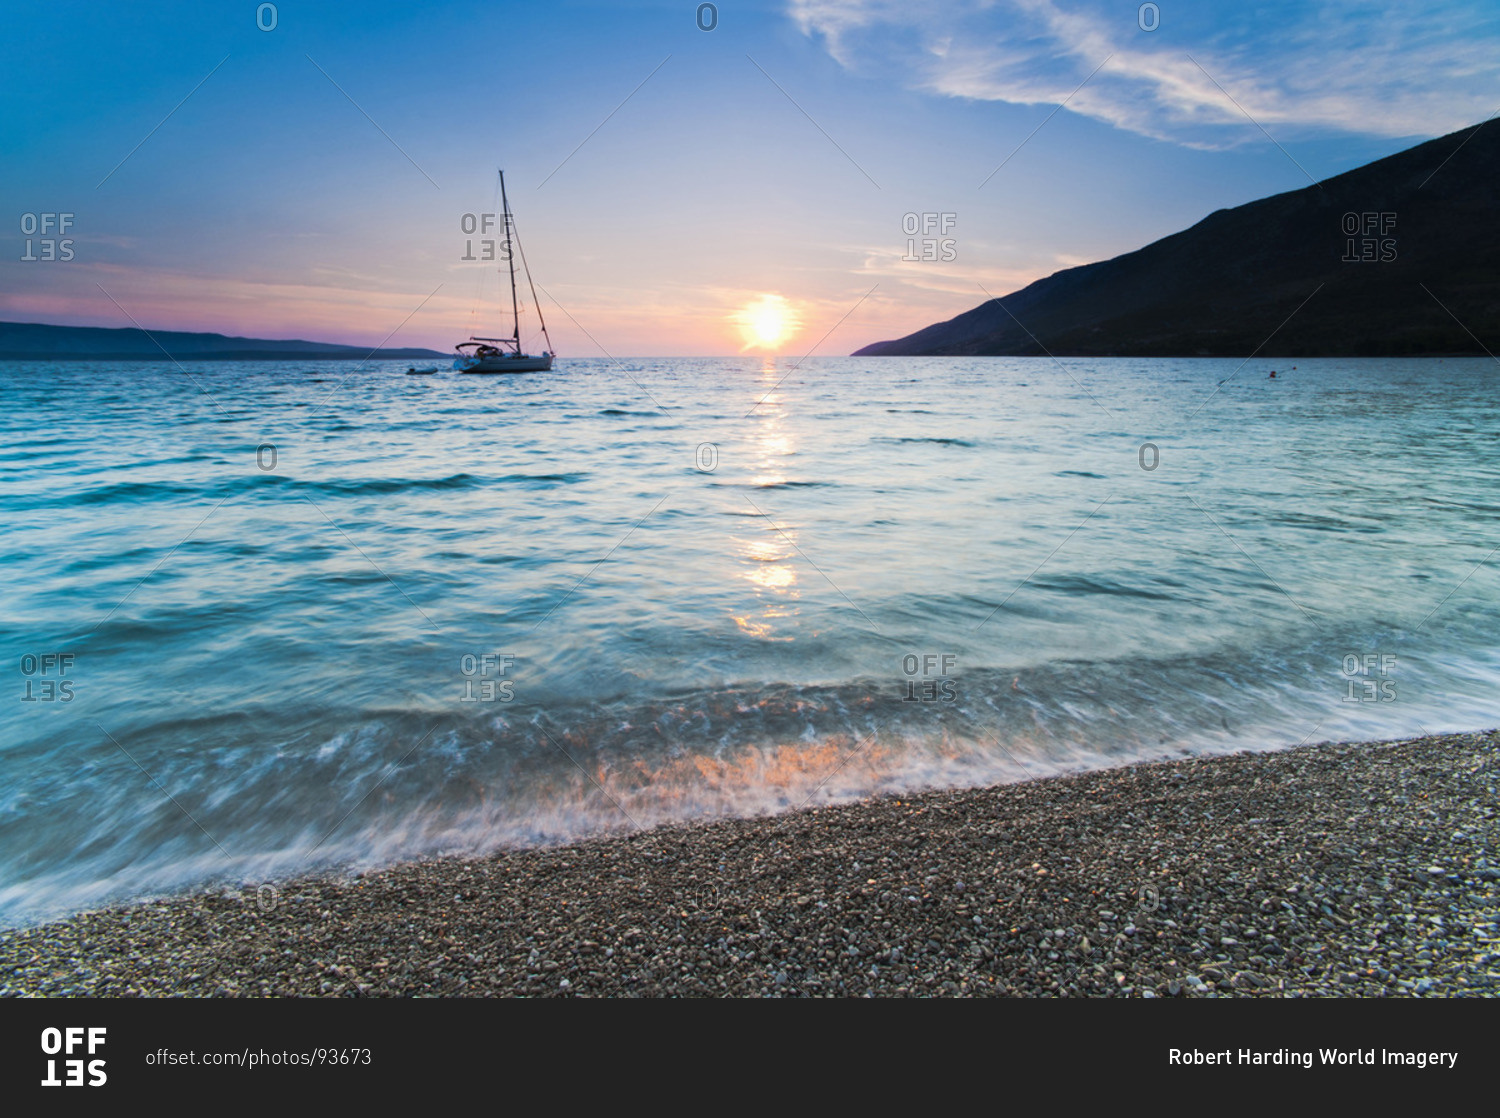 Adriatic Sea off Zlatni Rat Beach at sunset, Bol, Brac Island, Dalmatian Coast, Croatia, Europe